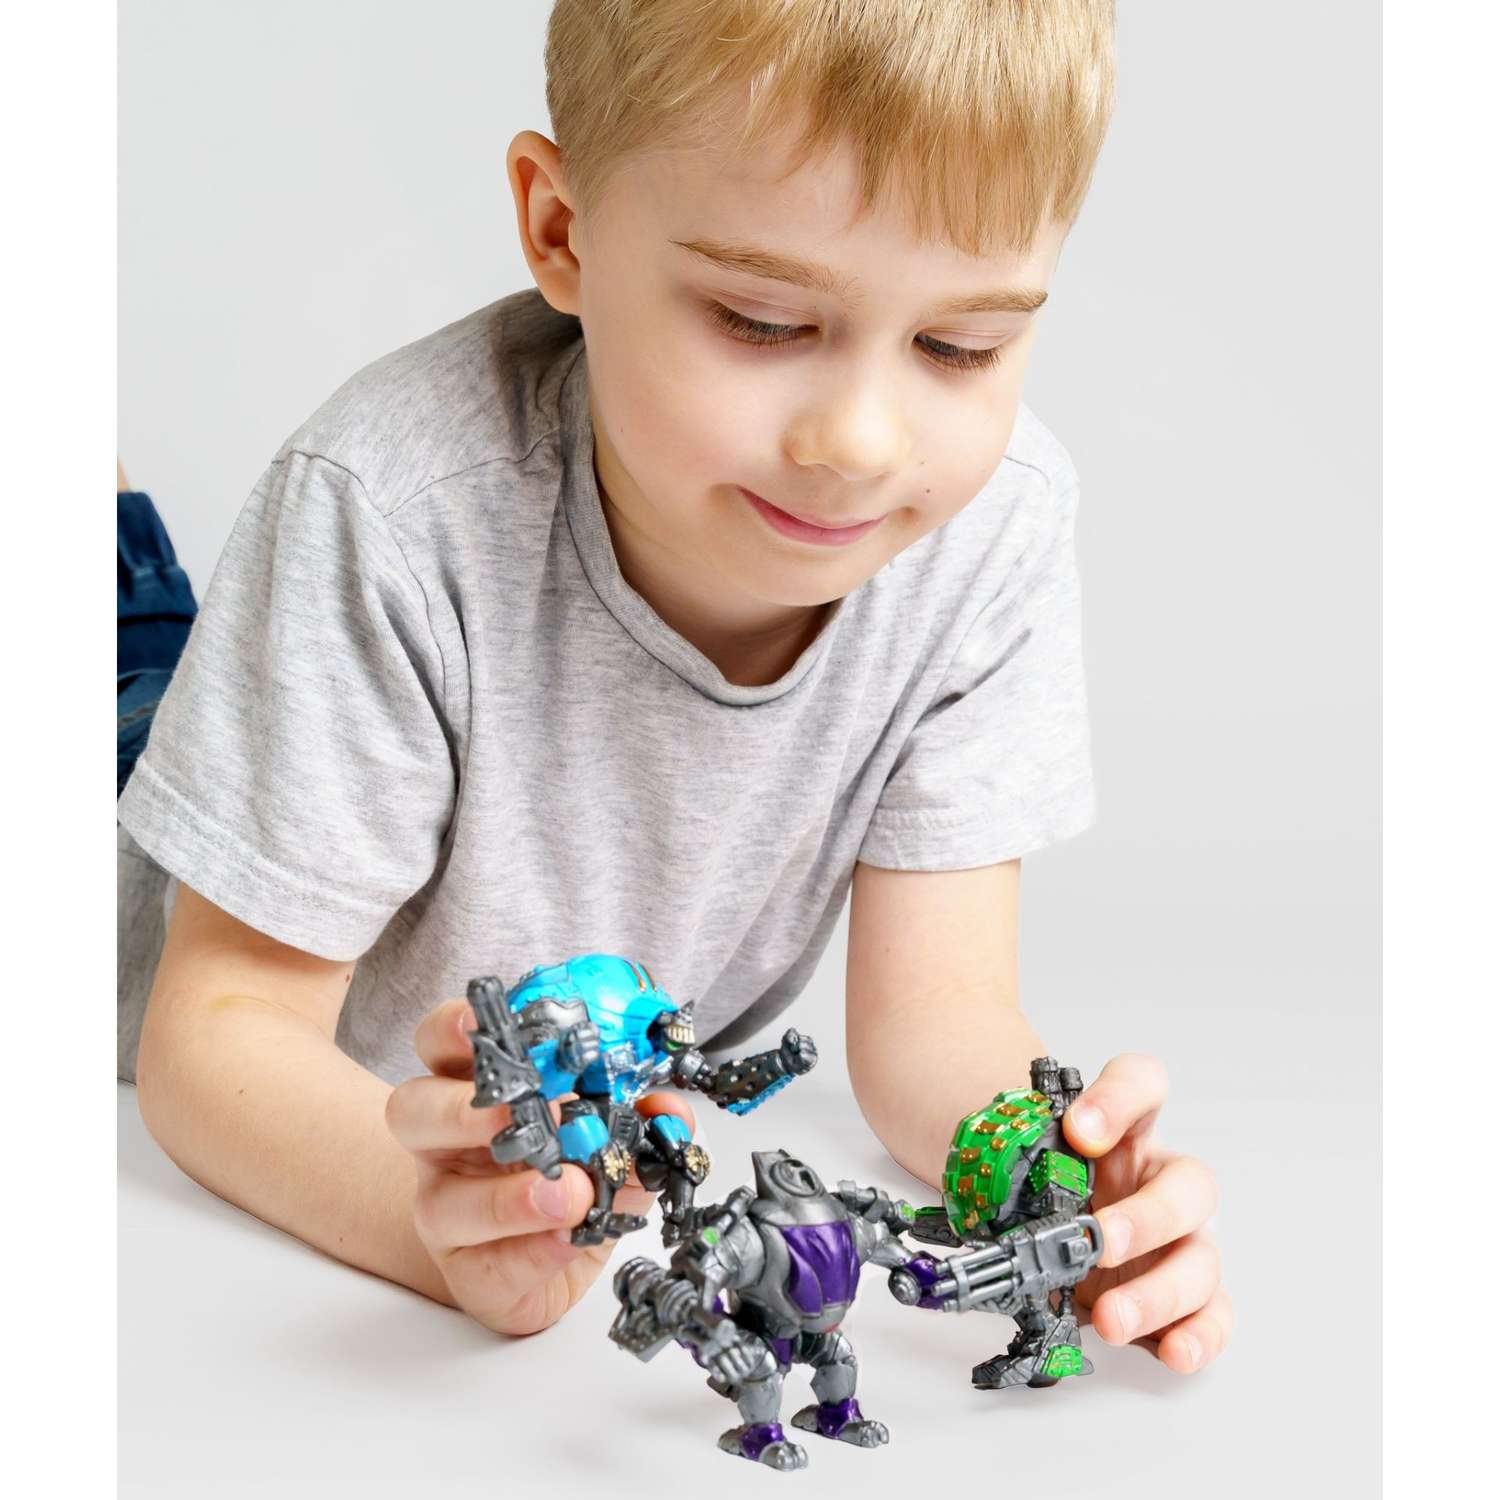 Роботы CyberCode 3 фигурки игрушки для детей развивающие пластиковые коллекционные интересные. 8см - фото 3